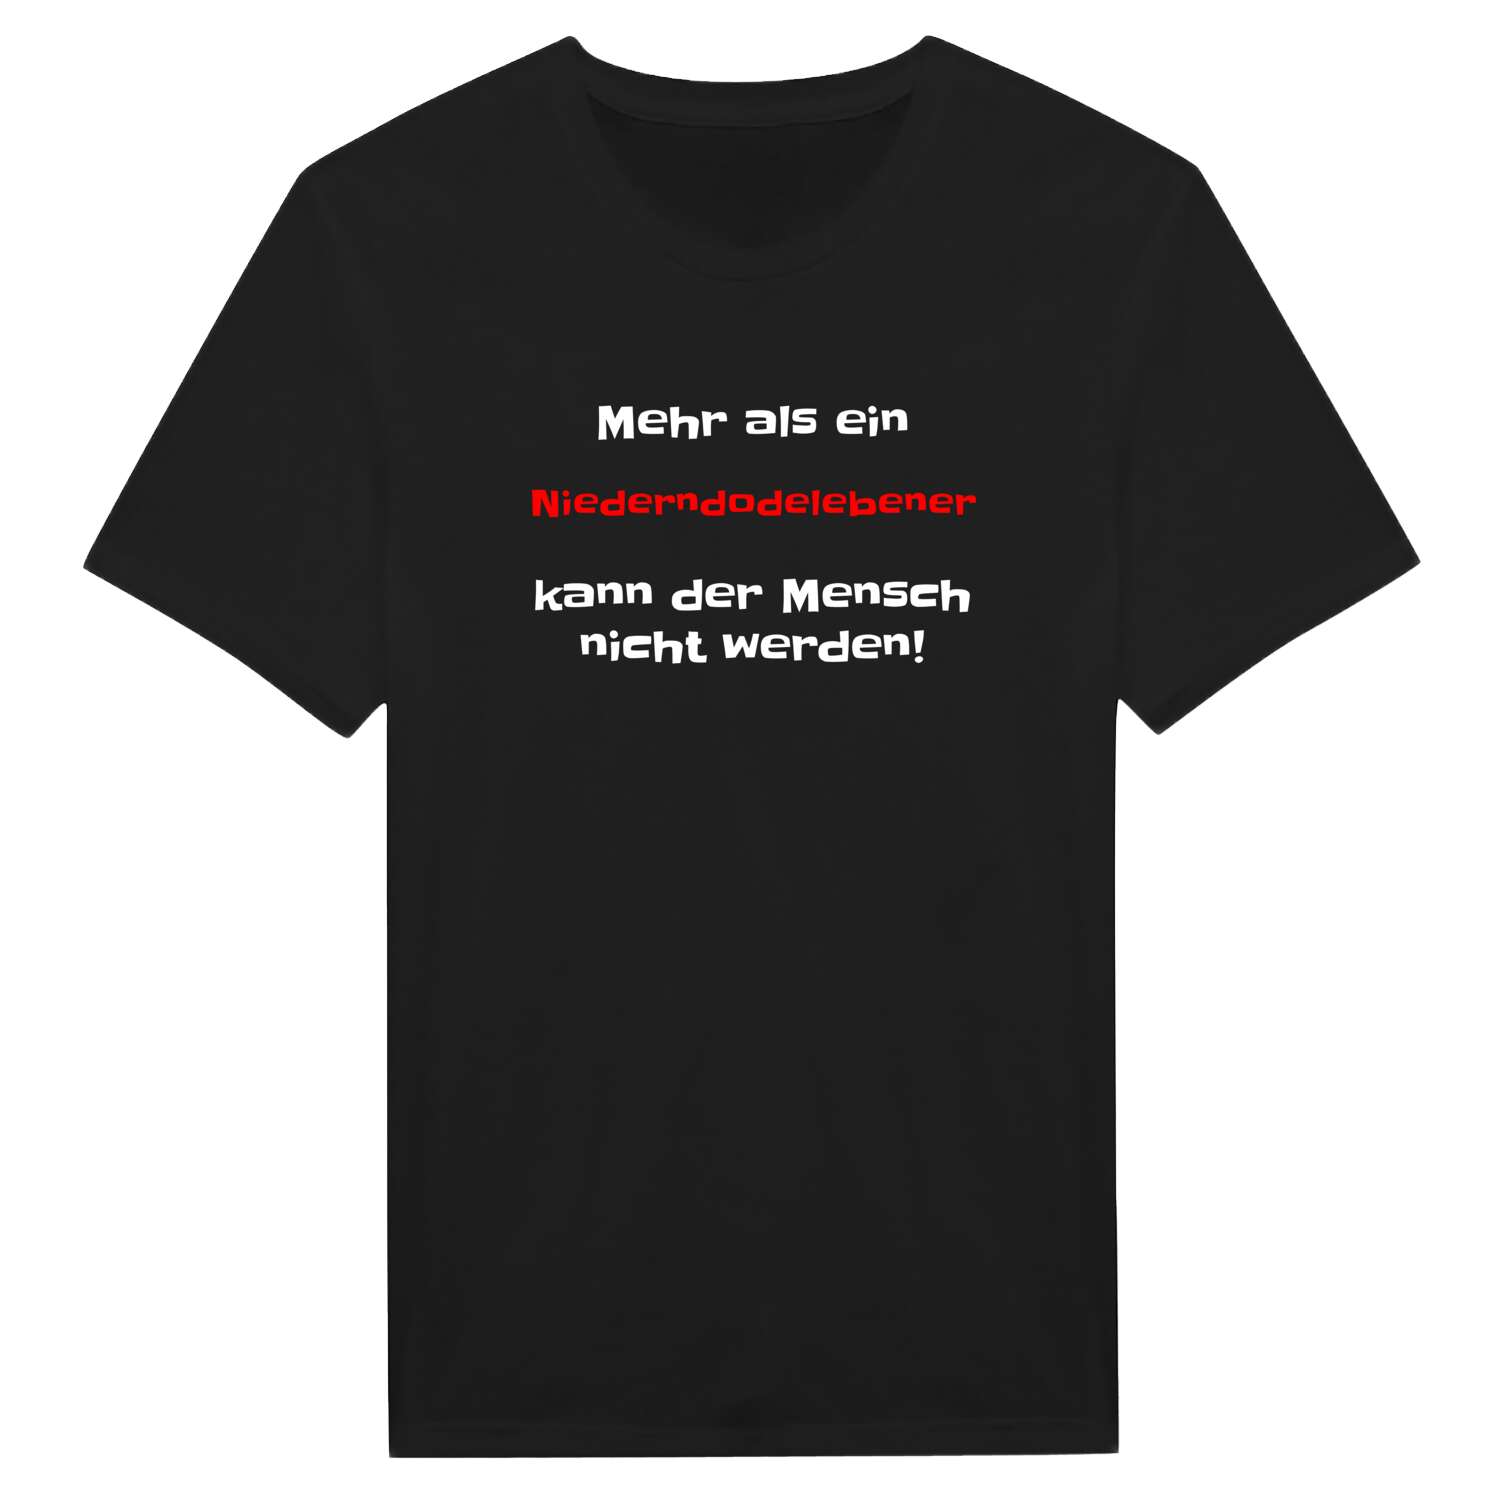 Niederndodeleben T-Shirt »Mehr als ein«